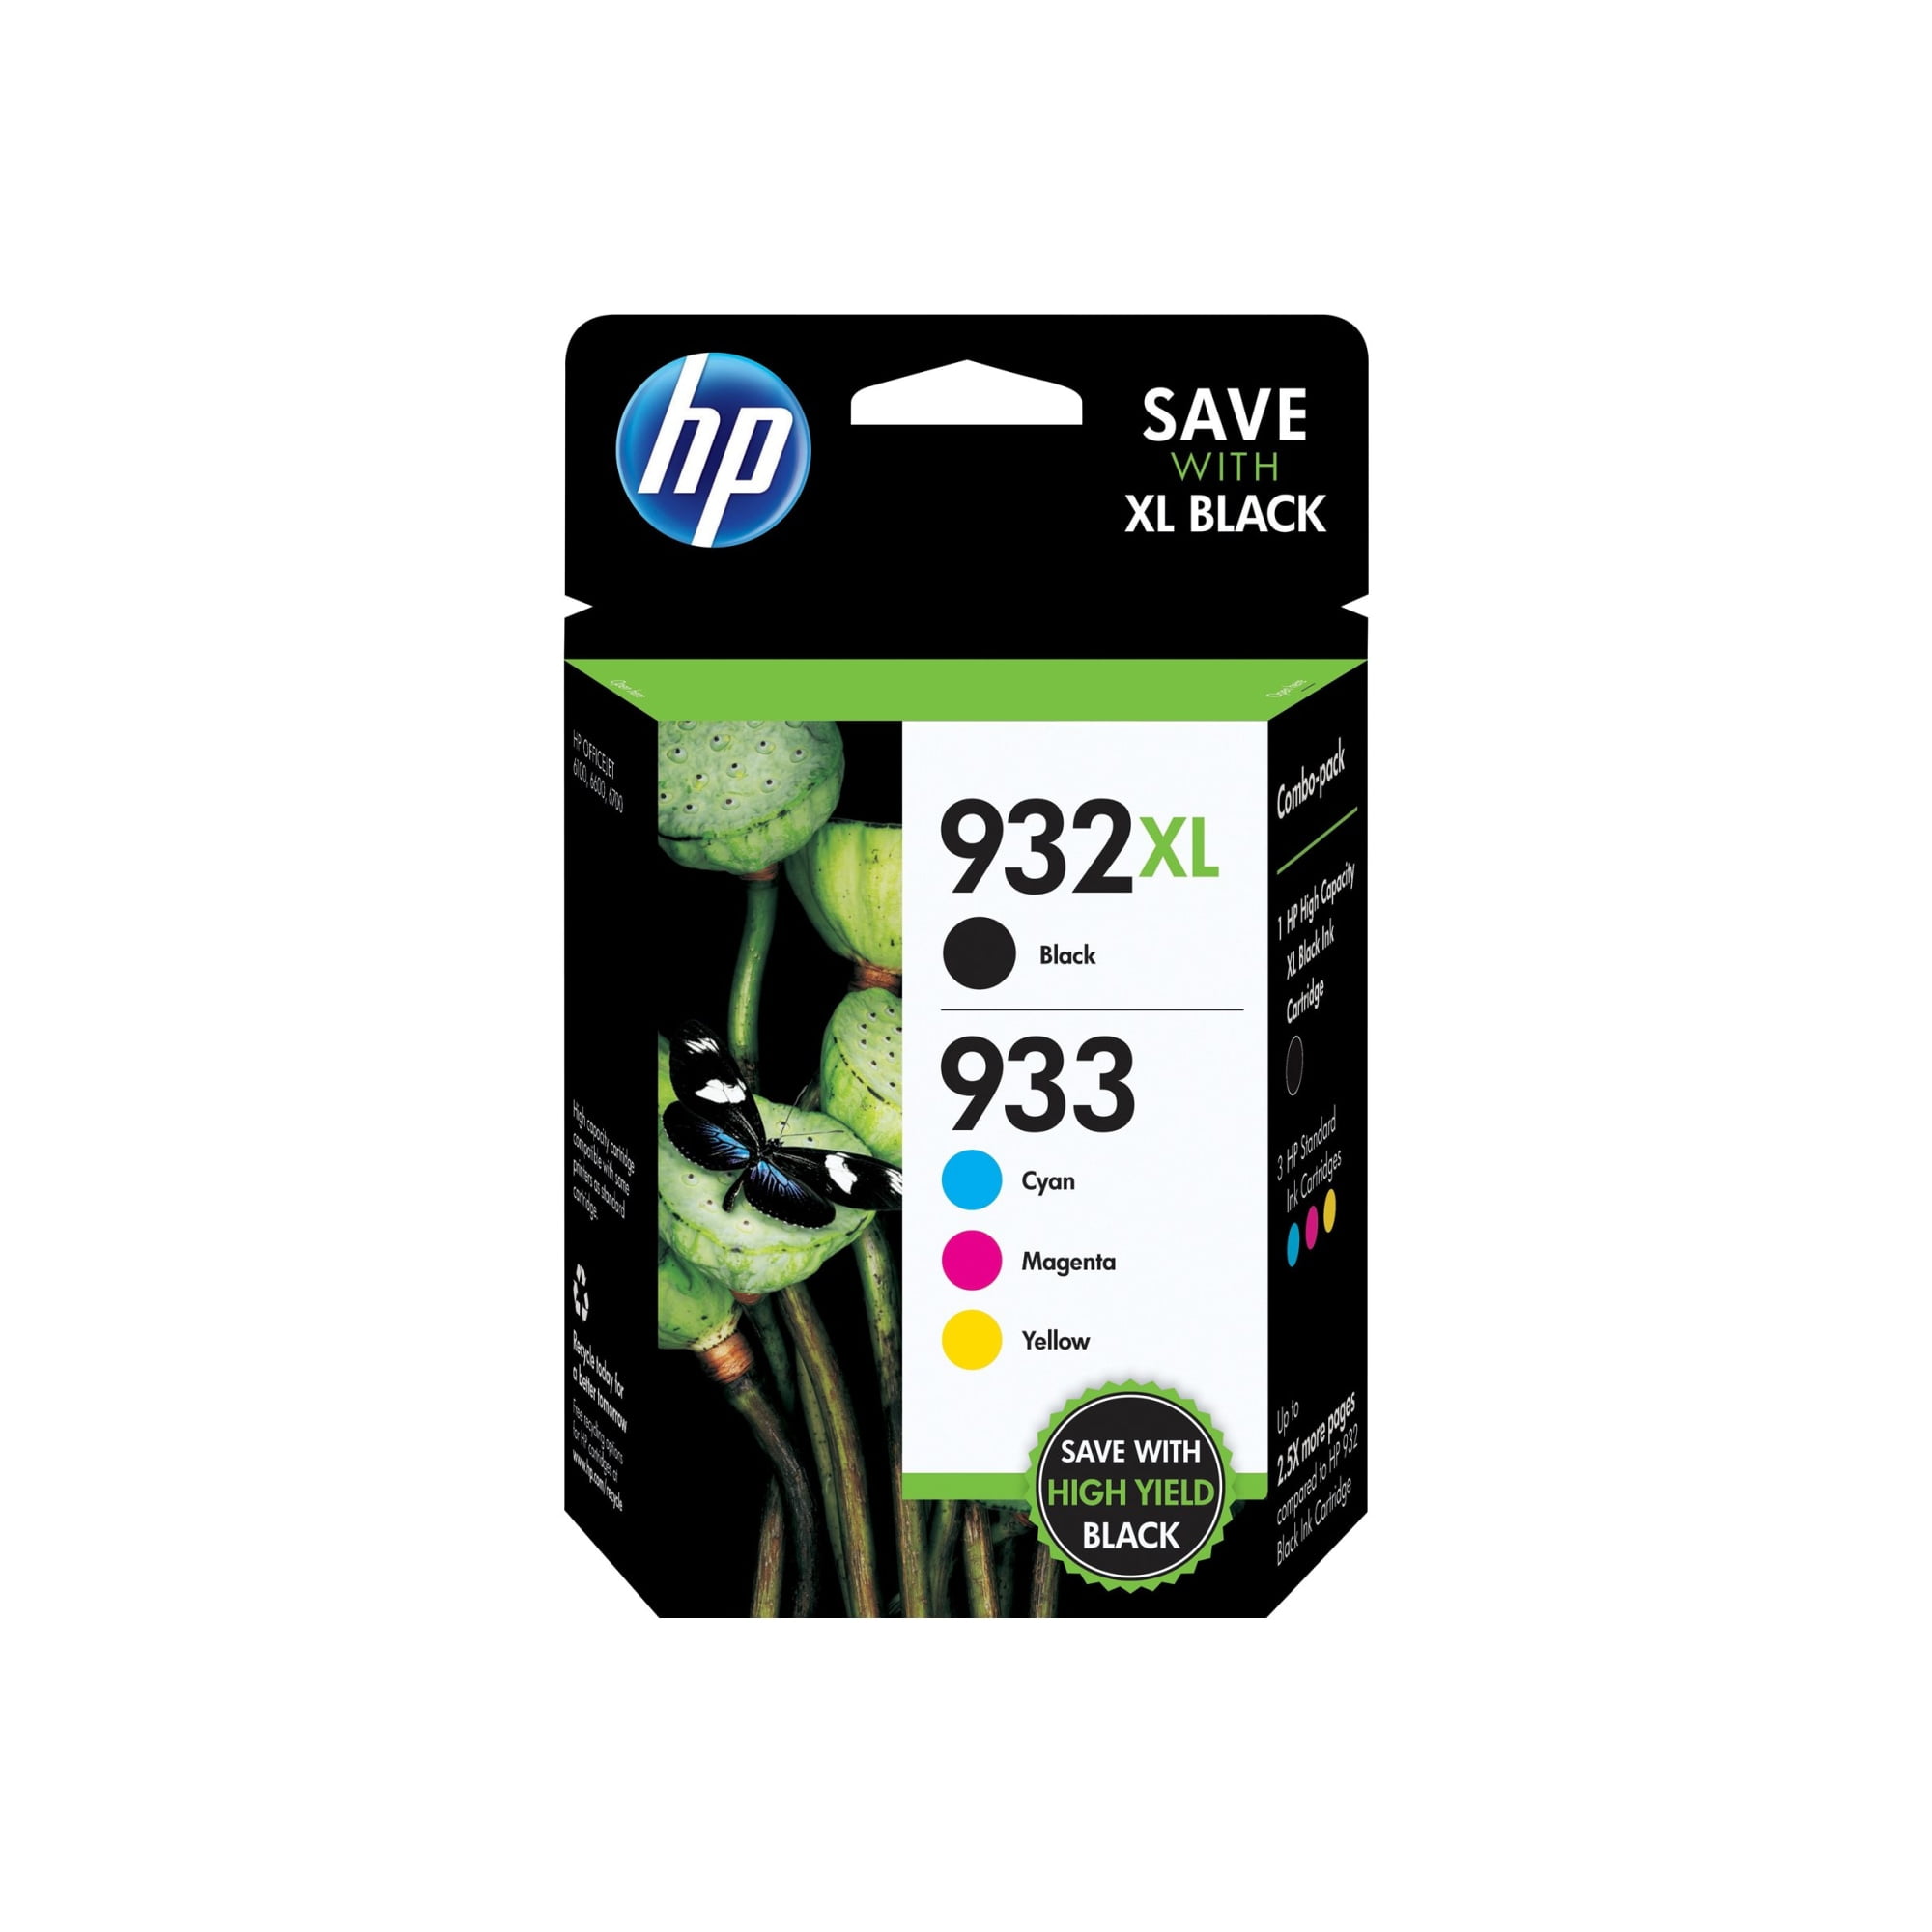 HP 932XL Ink Cartridge, Black (CN053AN) - Walmart.com